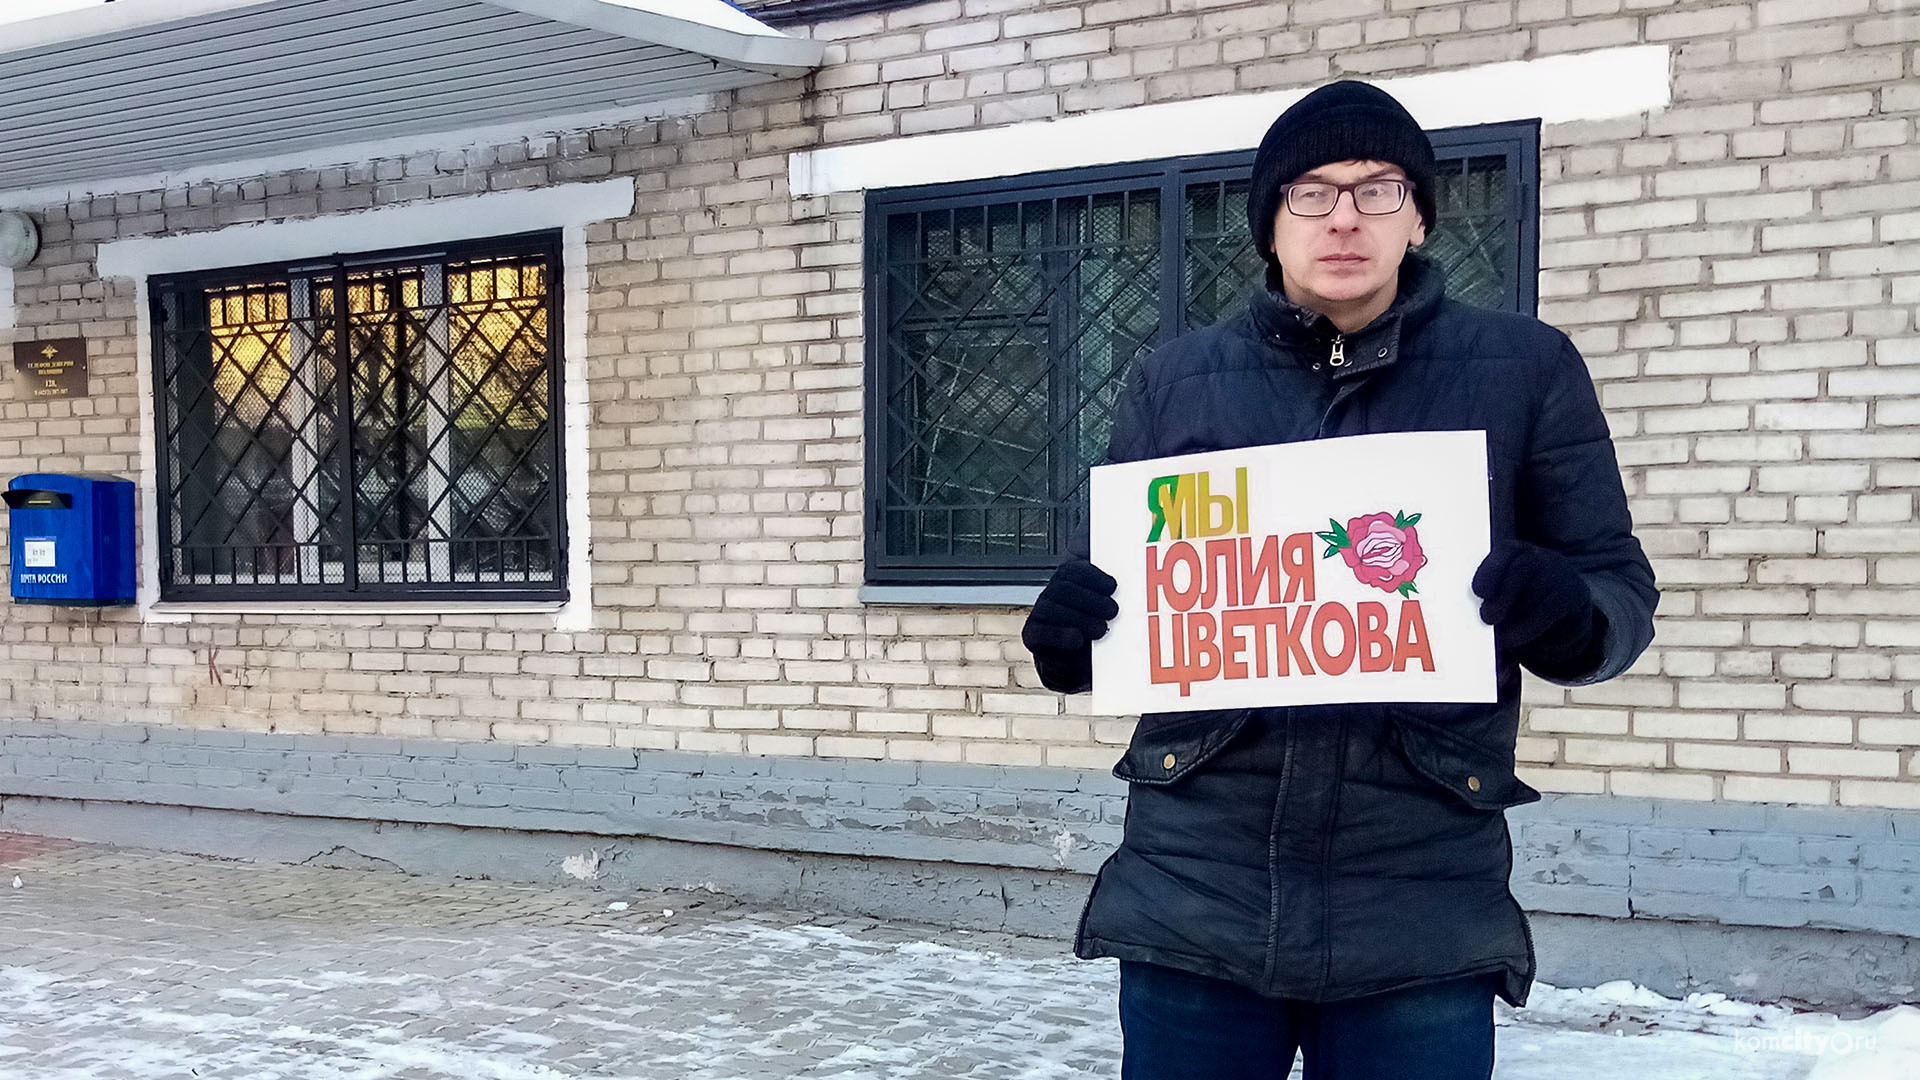 У здания городской полиции был проведён пикет в поддержку активистки Юлии Цветковой